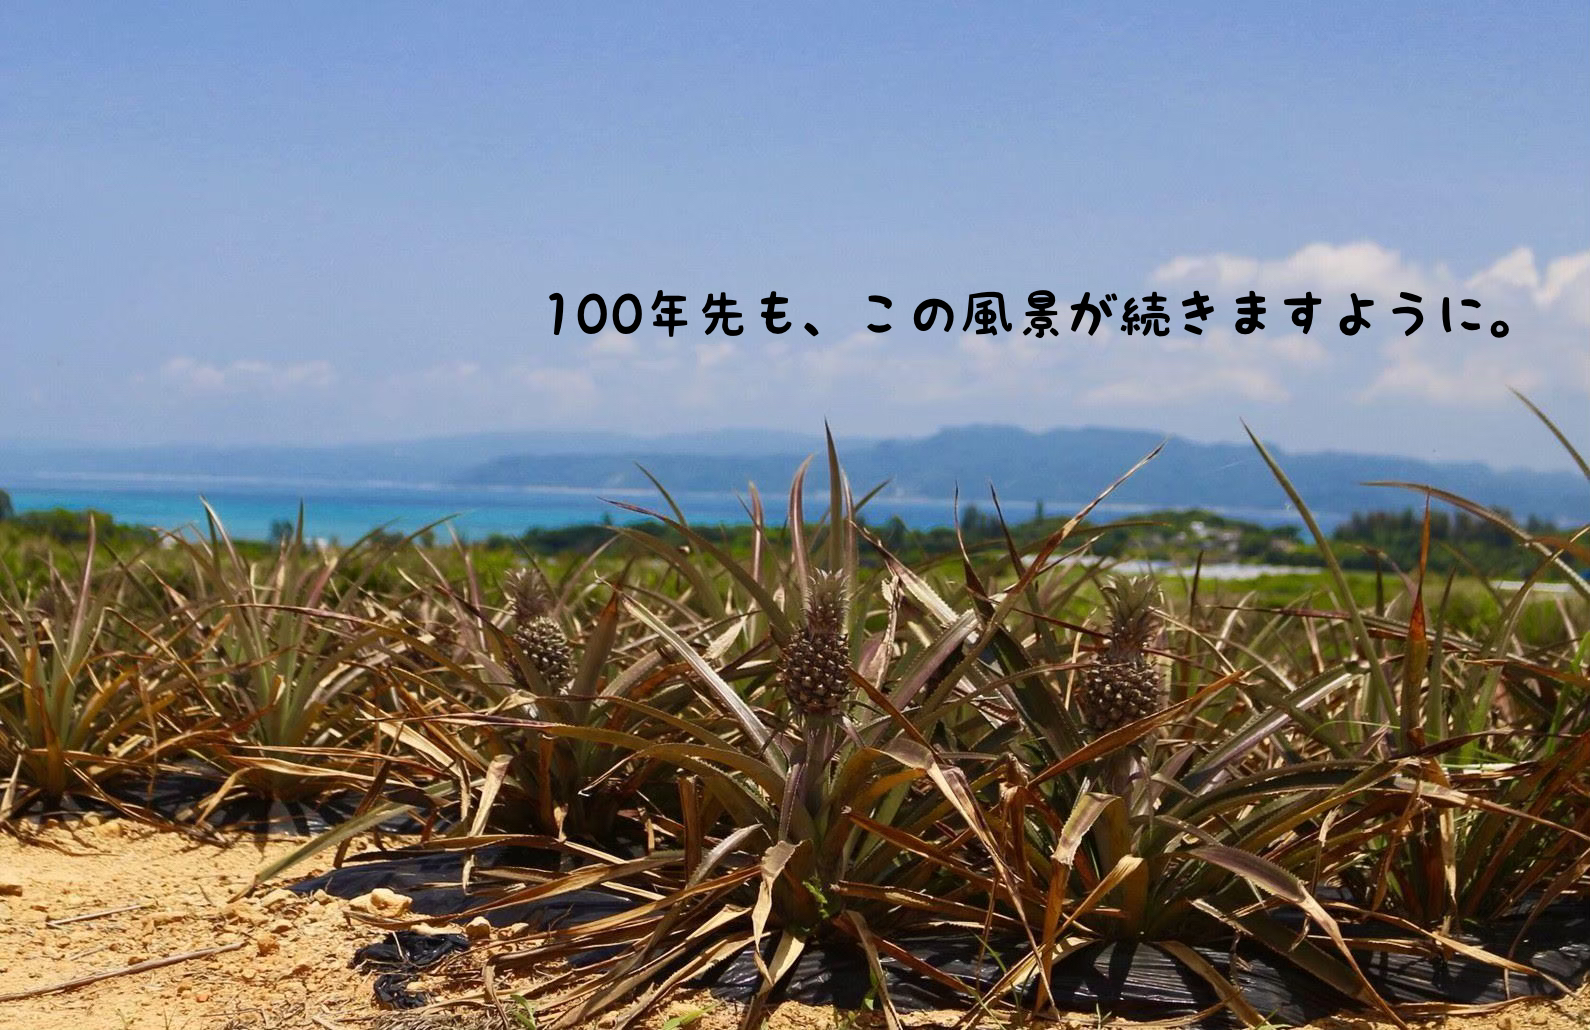 100年先も、この風景が続きますように。沖縄パインの魅力発信プロジェクト開始。 | 大浦湾 海辺の直売所「わんさか大浦パーク」